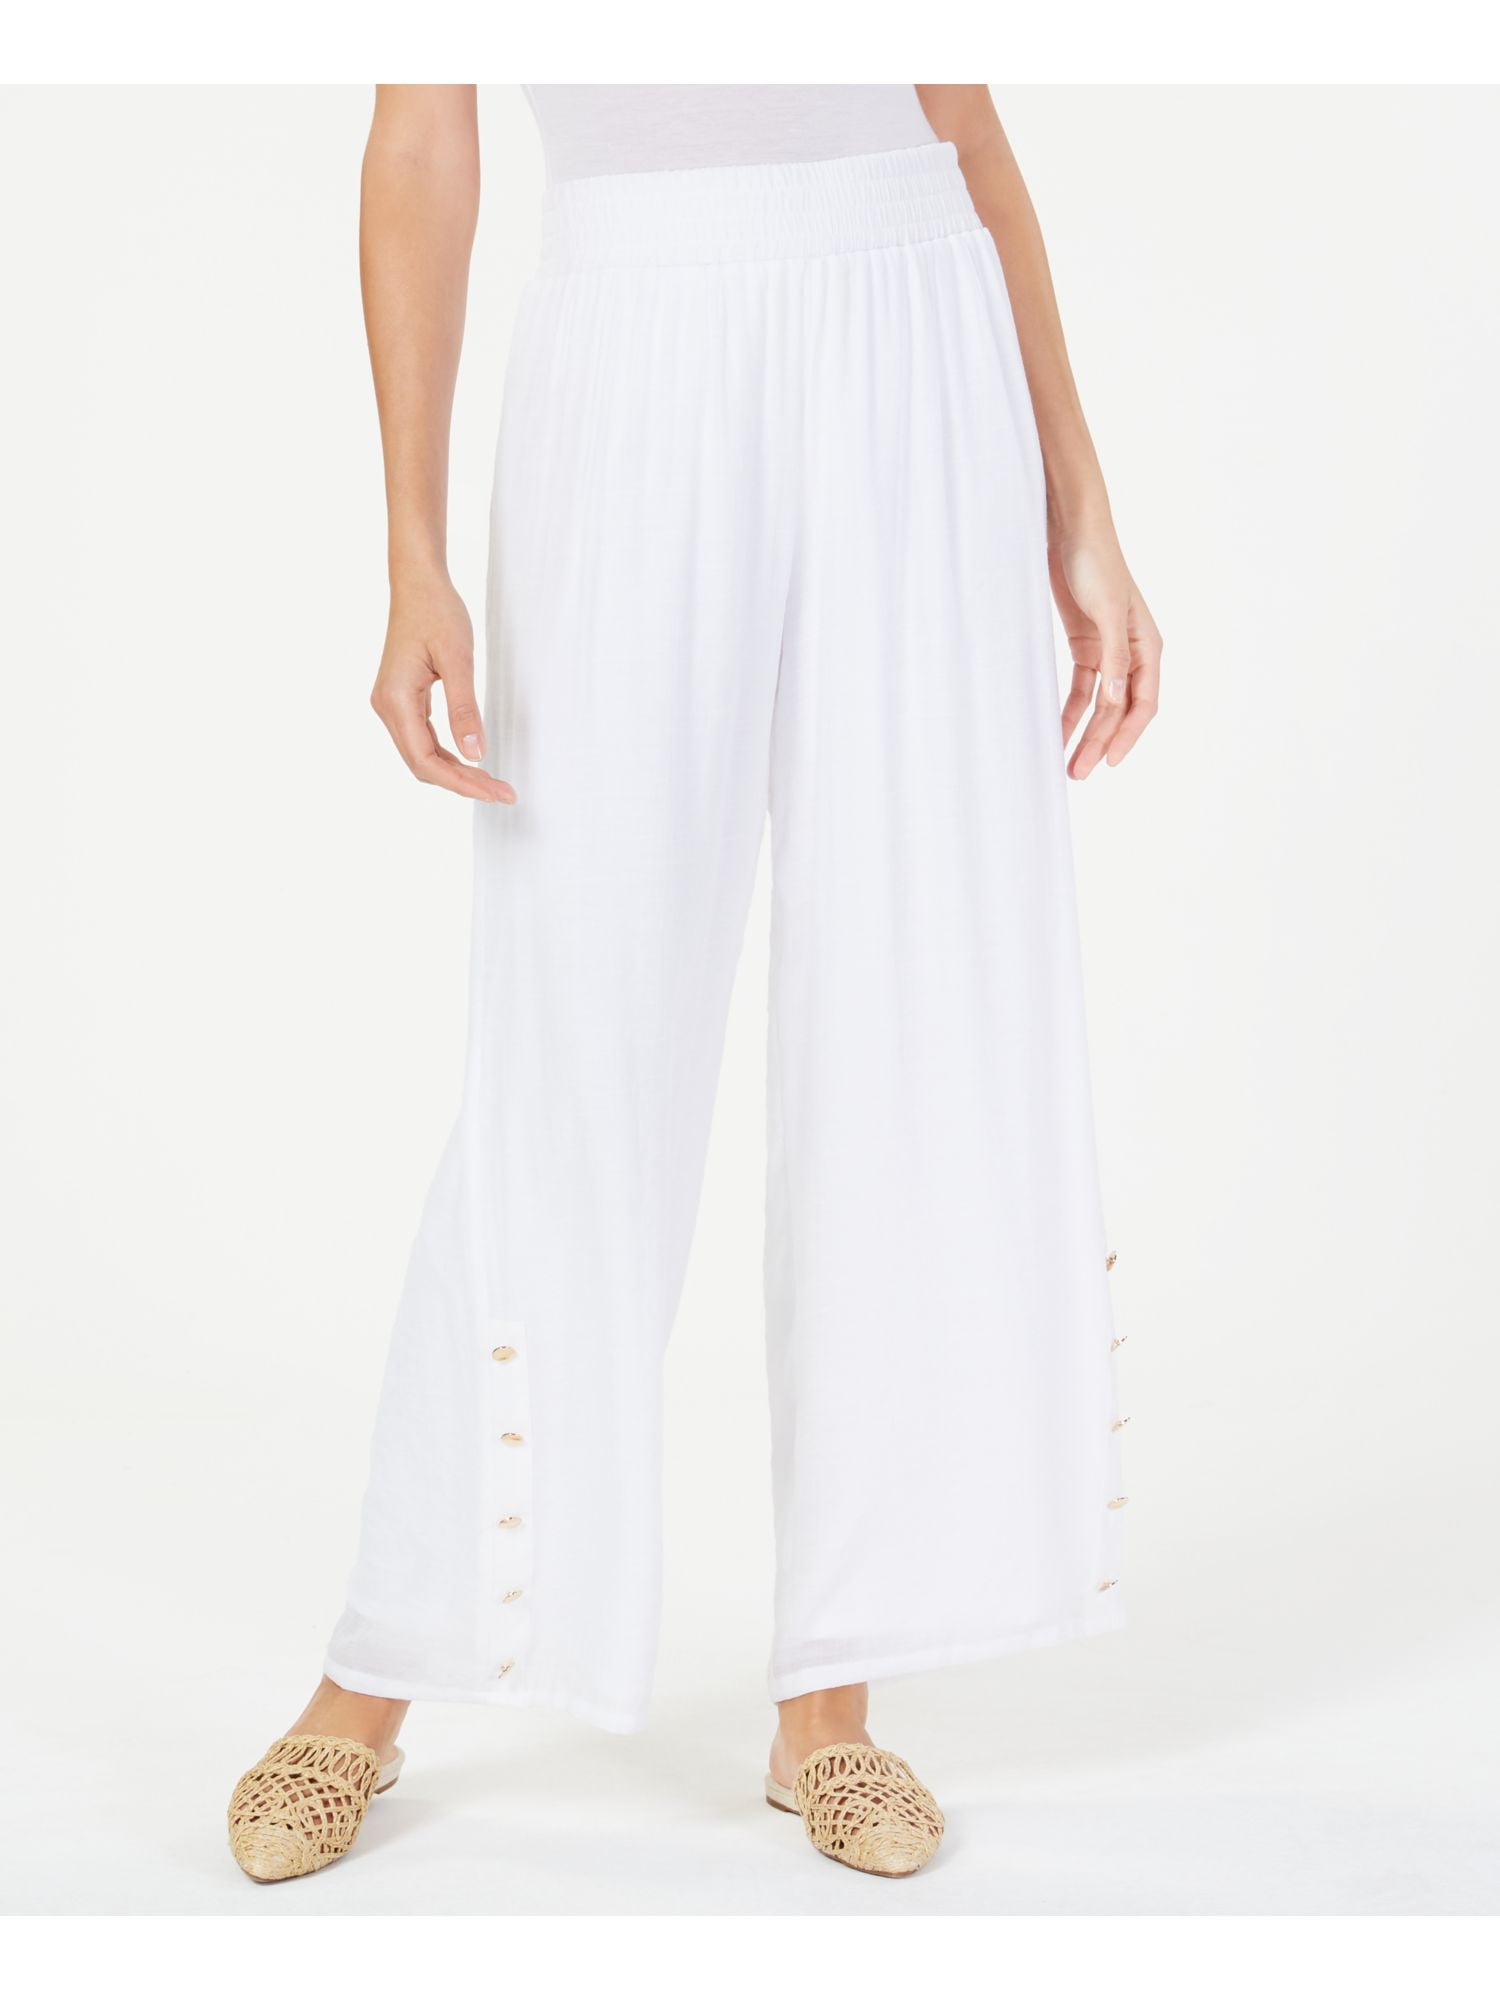 JM Collection - JM COLLECTION Womens White Pants Size XXL - Walmart.com ...